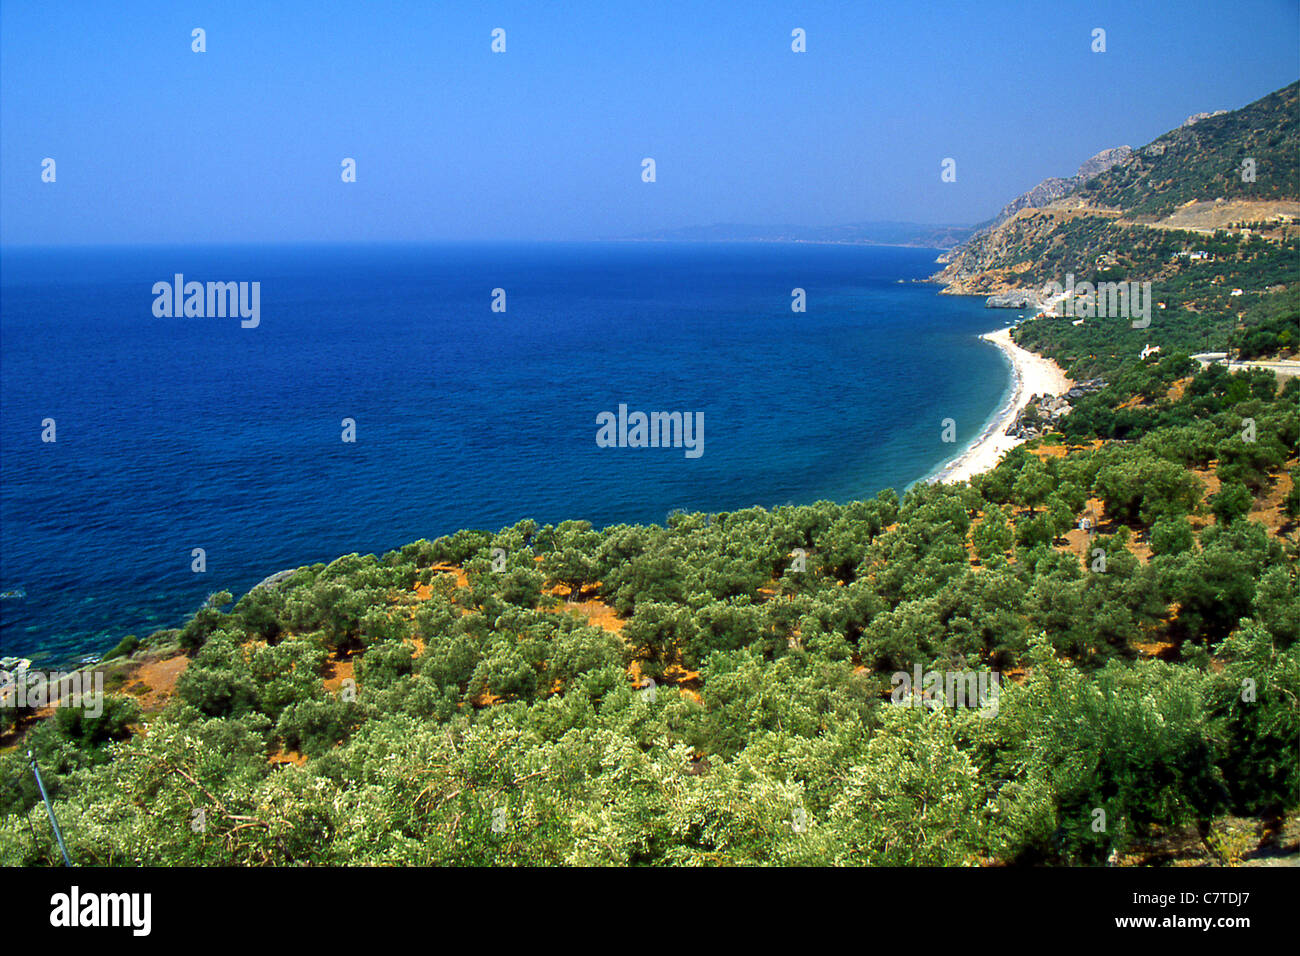 Beach at Lesvos island Greece Stock Photo